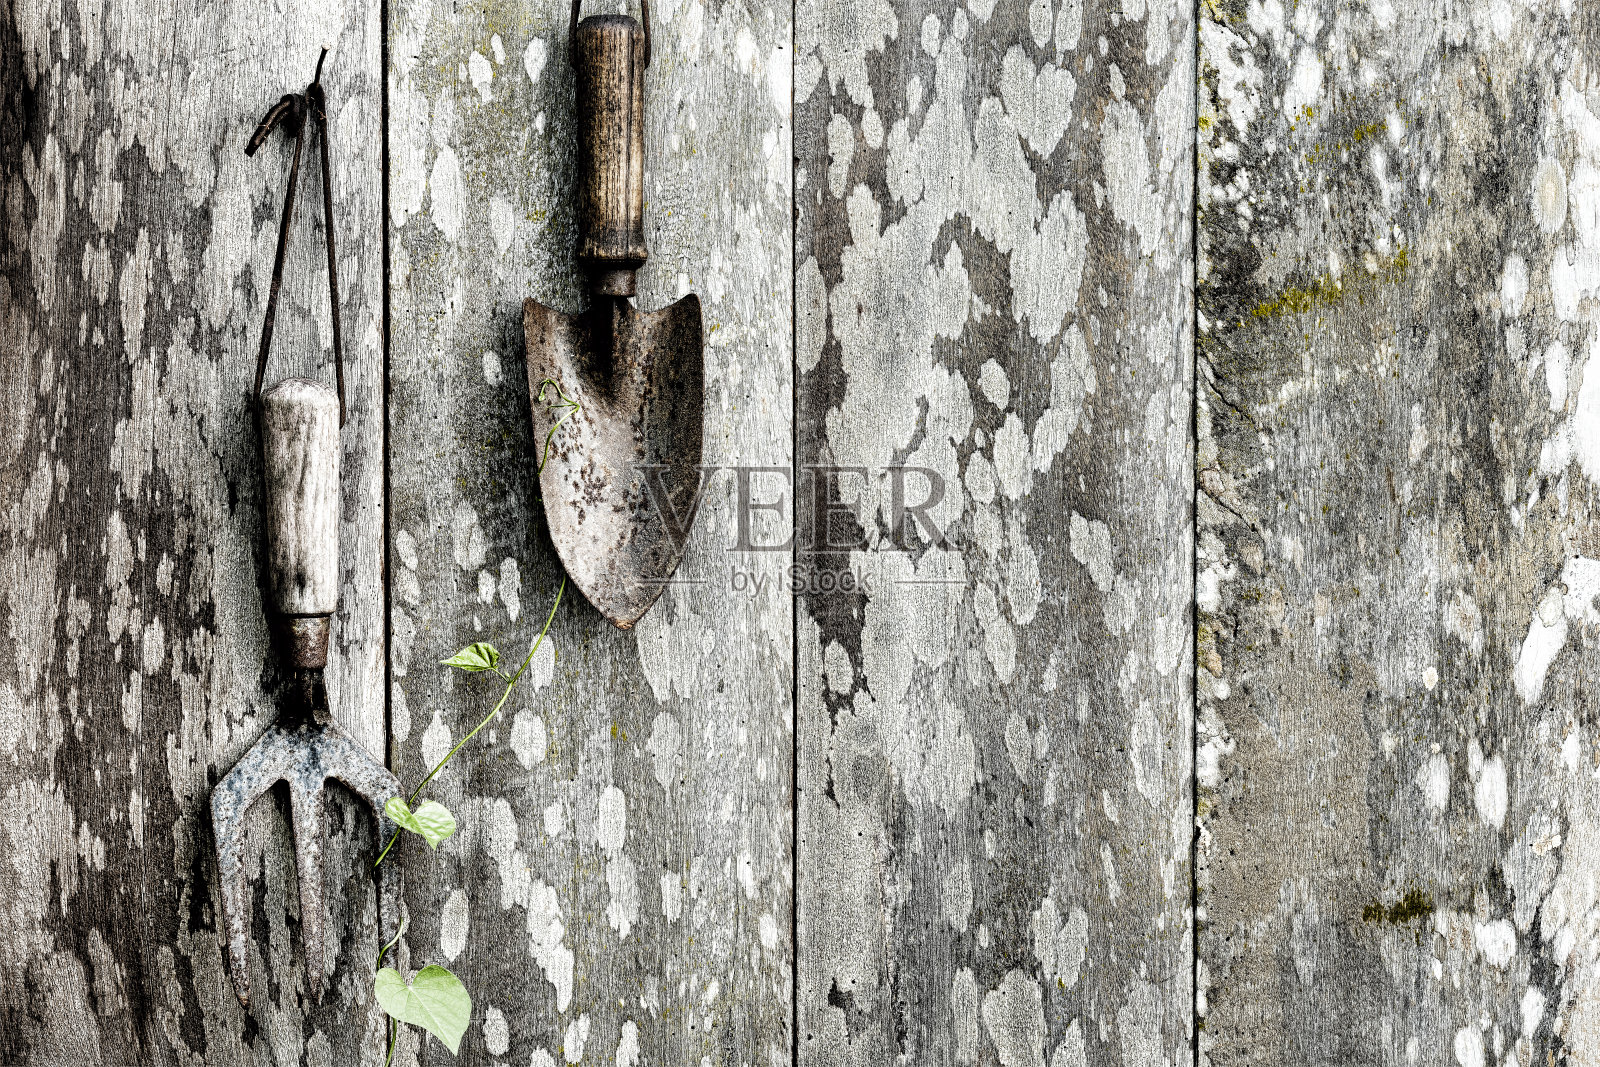 古老的生锈的花园泥铲和叉子挂在锈迹斑斑的铁钉上，上面是一个久经风霜、覆盖着青苔的木制花园篱笆，篱笆上爬满了杂草。照片摄影图片